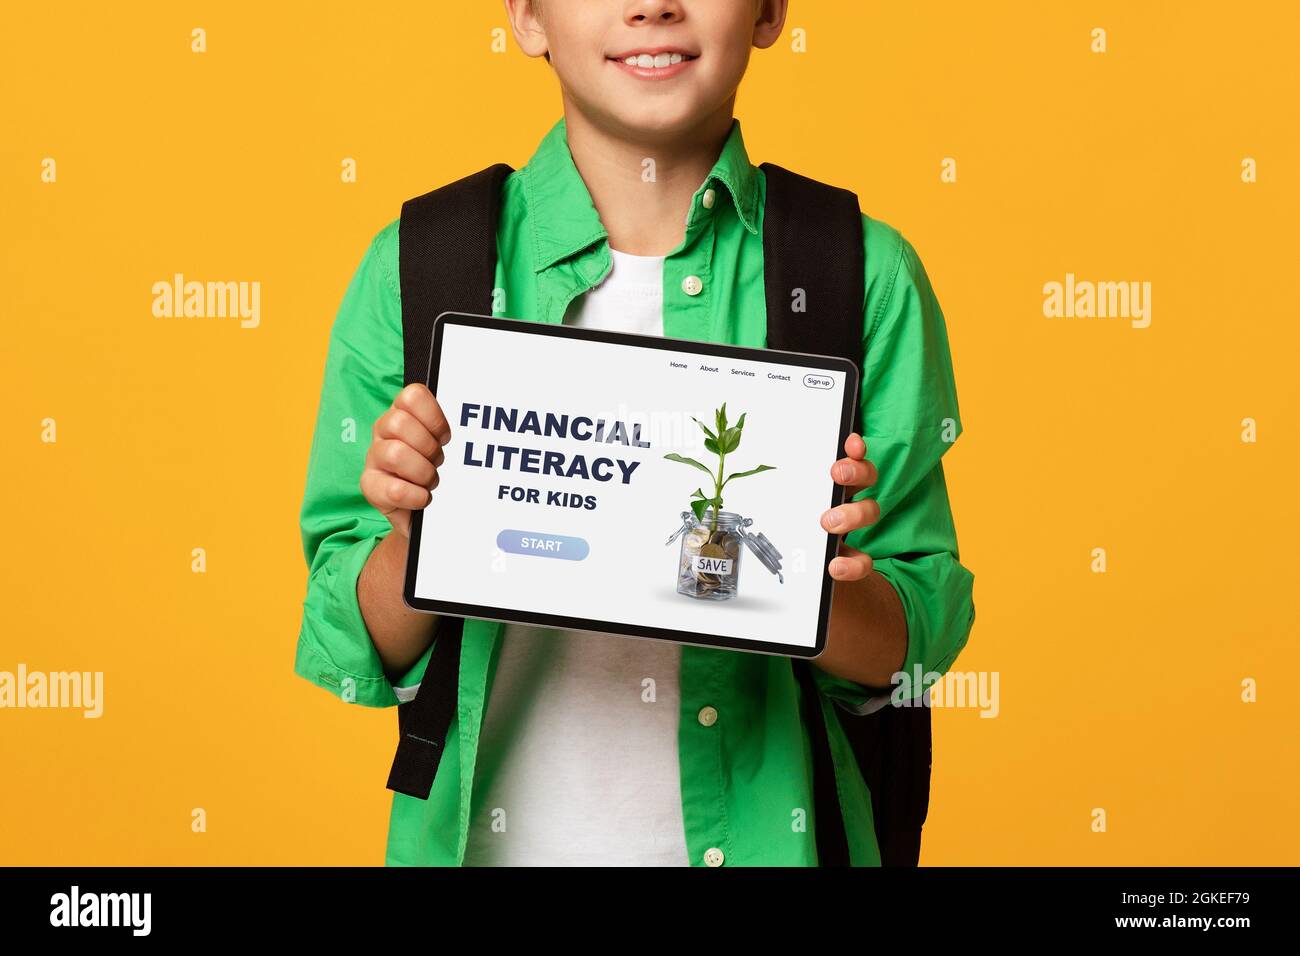 Garçon méconnaissable montrant une tablette avec le site Web Financial Literacy for Kids, la publicité en ligne éducation économique Banque D'Images